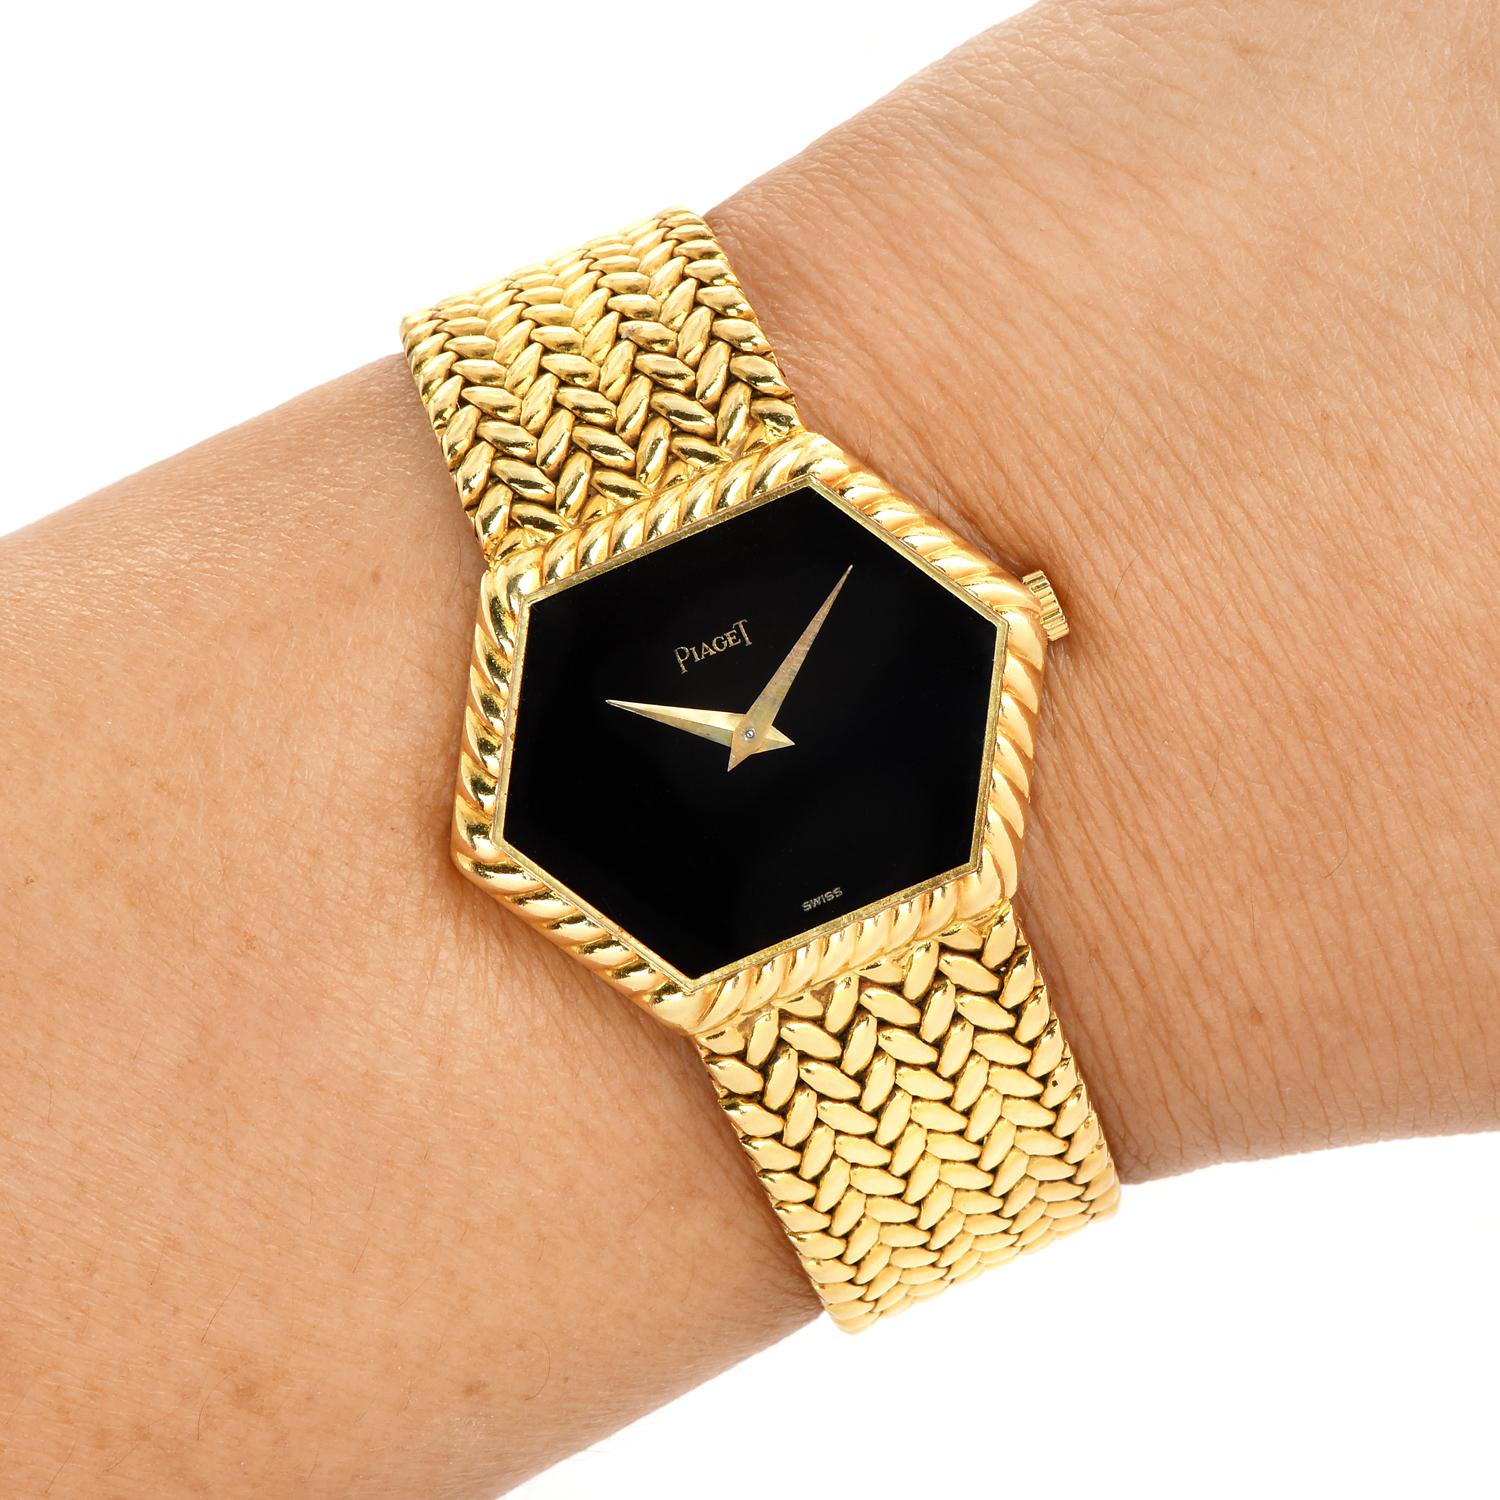 Pre-Owned Piaget Referenznummer 9559, seltene sechseckige Lünette.

Elegante solide alle 18K Gelbgold Uhr, verfügt über eine 30 mm x 23 mm, 18k Gelbgold Gehäuse mit Fold over Verschluss.
Diese Vintage 18k Gold Uhr hat ein schwarzes Onyx-Zifferblatt